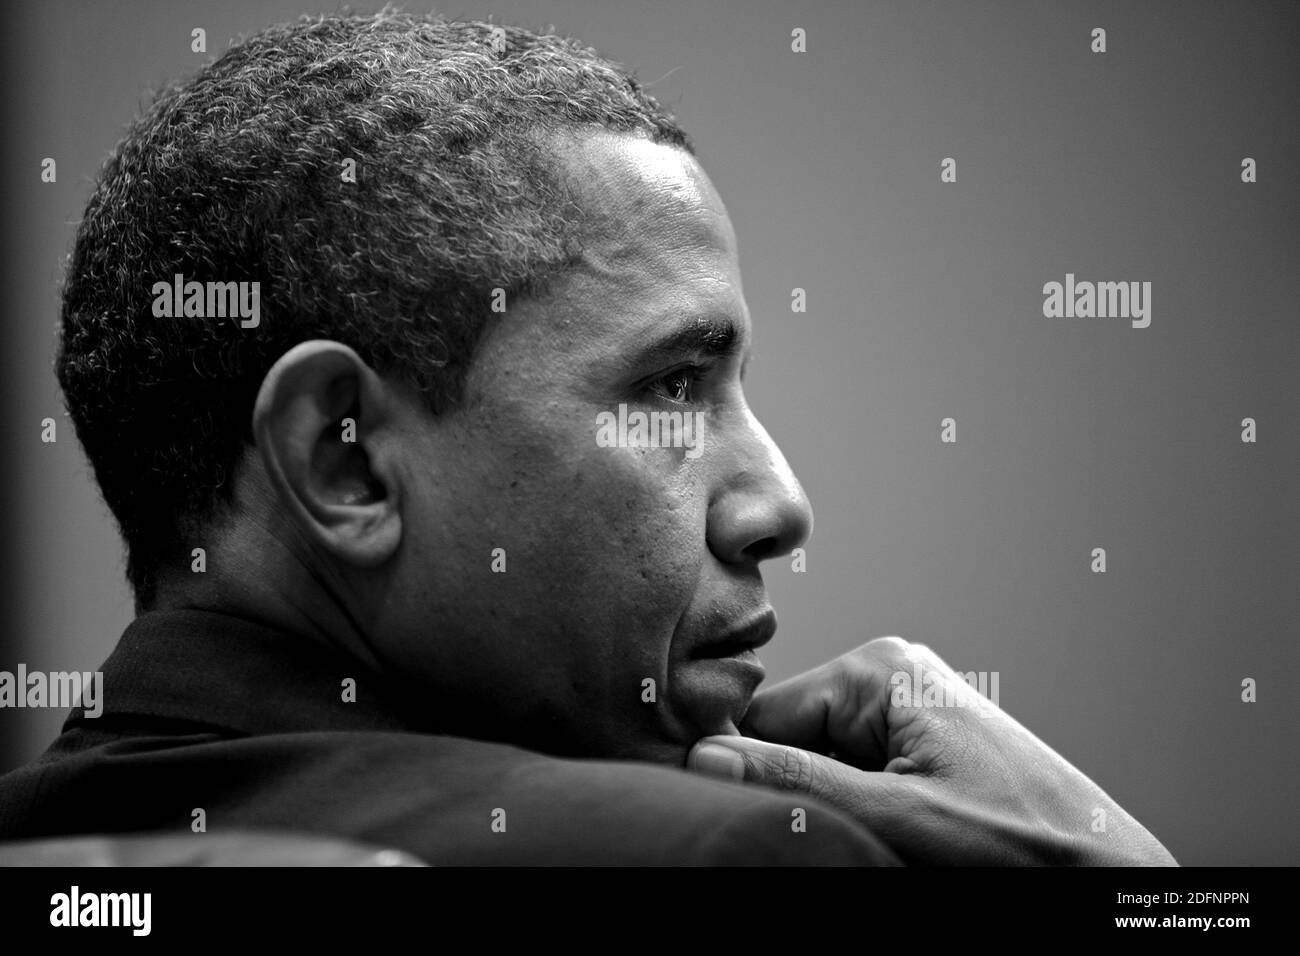 WASHINGTON DC, EE.UU. - 28 de enero de 2013 - Retrato del Presidente de EE.UU. Barack Obama asiste a una reunión en la Sala Roosevelt de la Casa Blanca, 28 de enero de 2013 Foto de stock